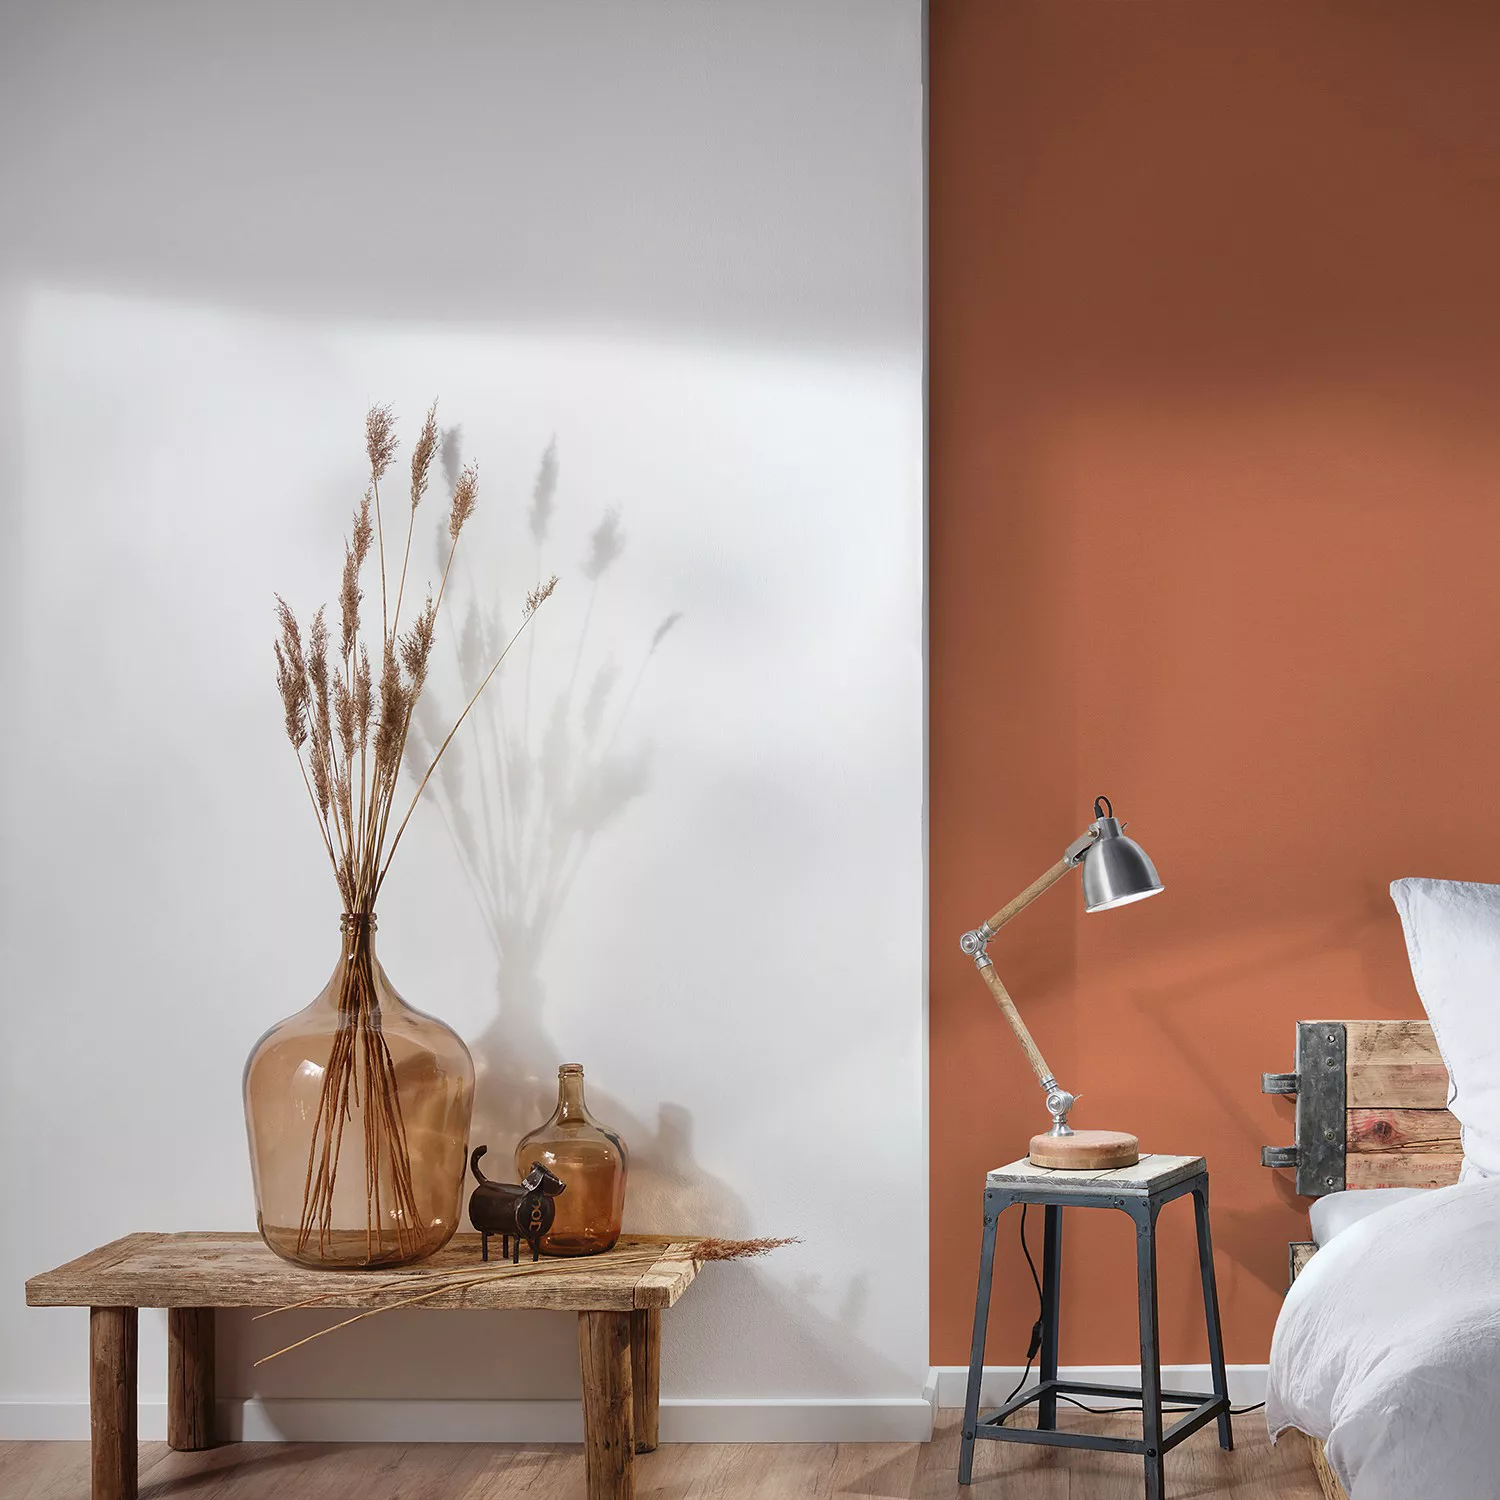 Bricoflor Terracotta Tapete Einfarbig Uni Vliestapete in Leinenoptik Orange günstig online kaufen